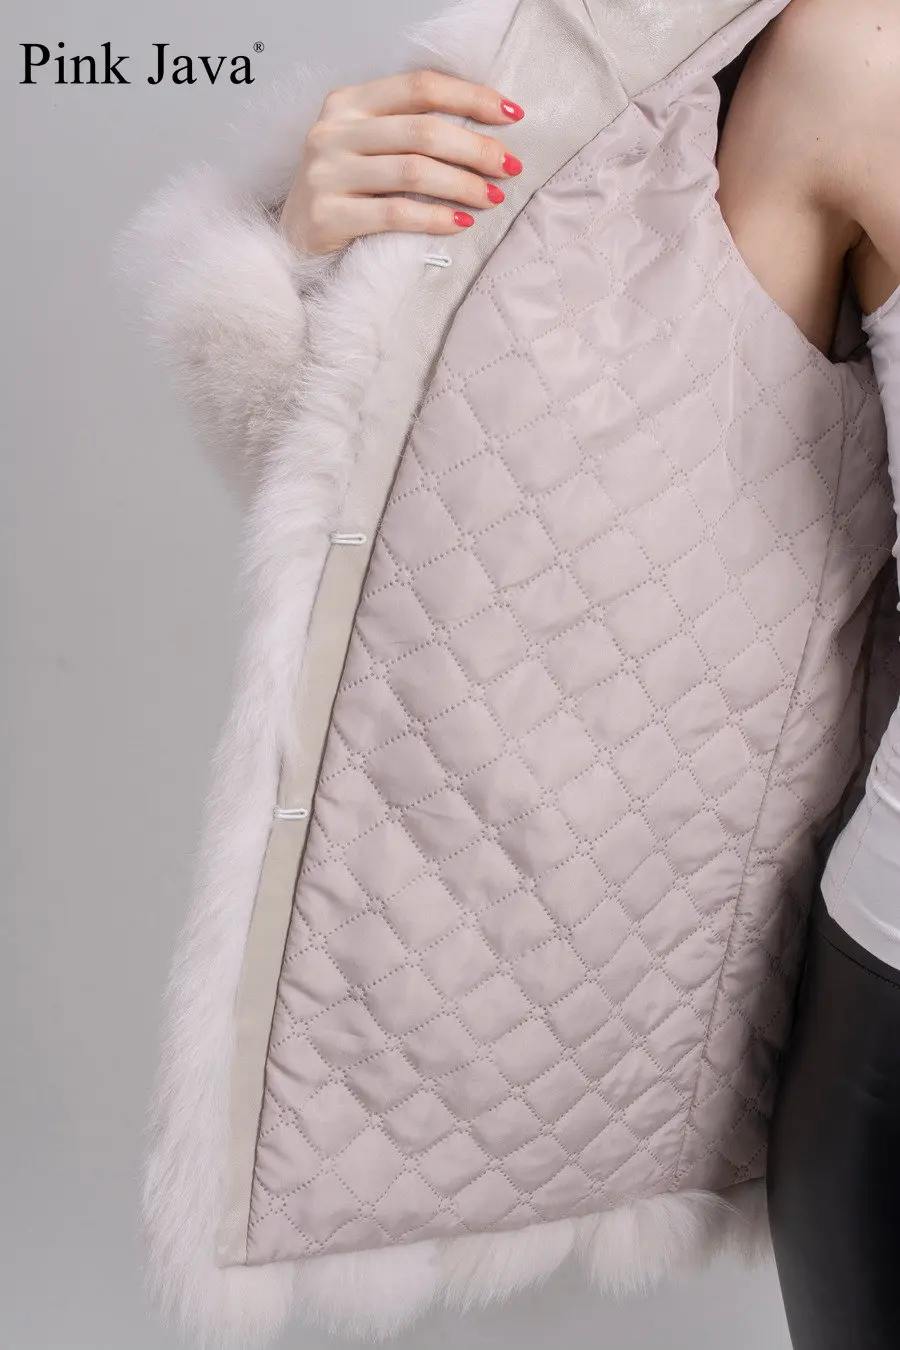 Розовая JAVA QC1824 Новое поступление Женская Шуба из натурального Лисьего меха пушистая зимняя верхняя одежда модная Высококачественная шуба